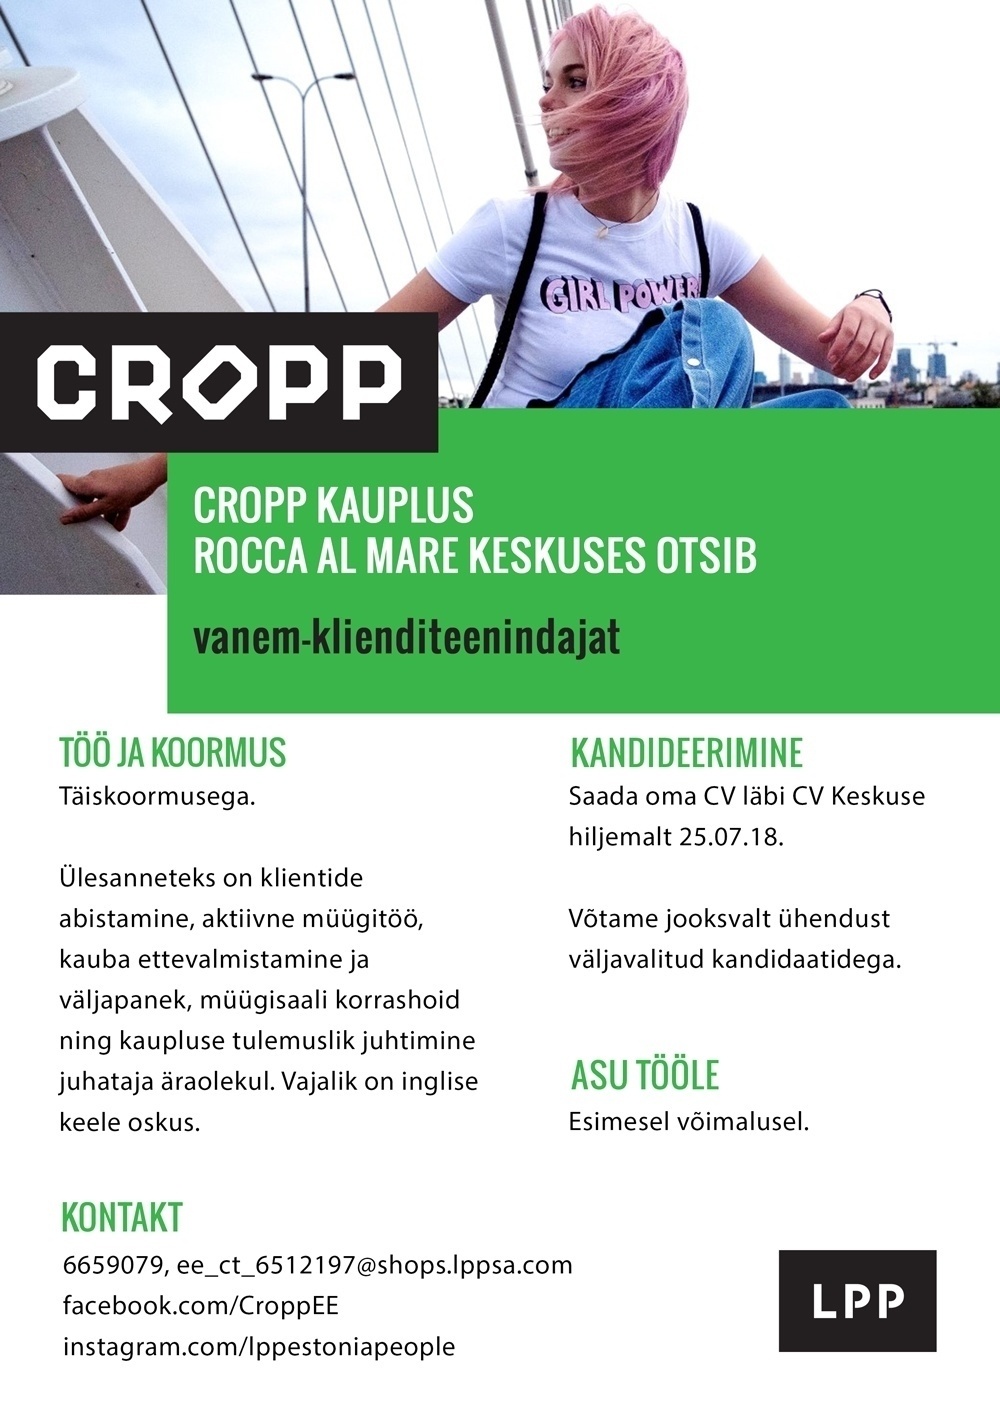 LPP Estonia OÜ Vanem-klienditeenindaja CROPP kaupluses Rocca al Mare keskuses